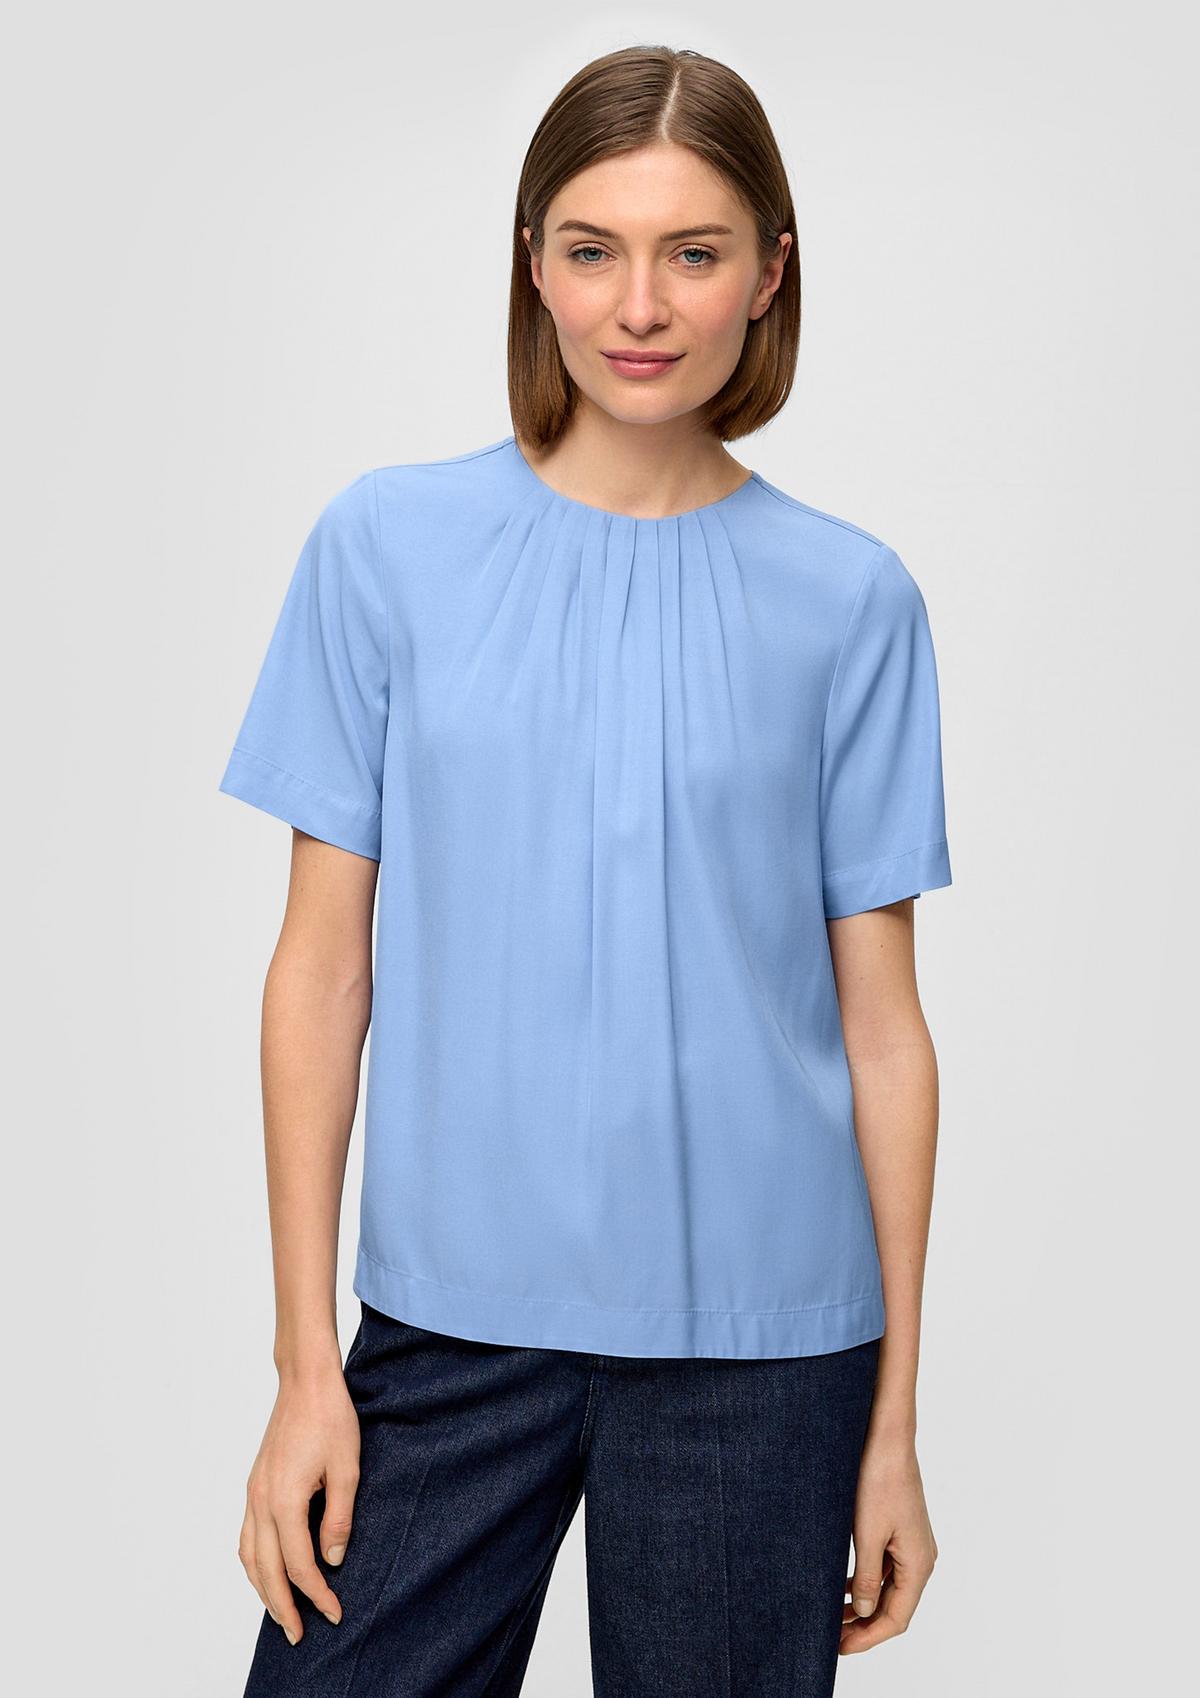 Damen-Kurzarm-Blusen kaufen online